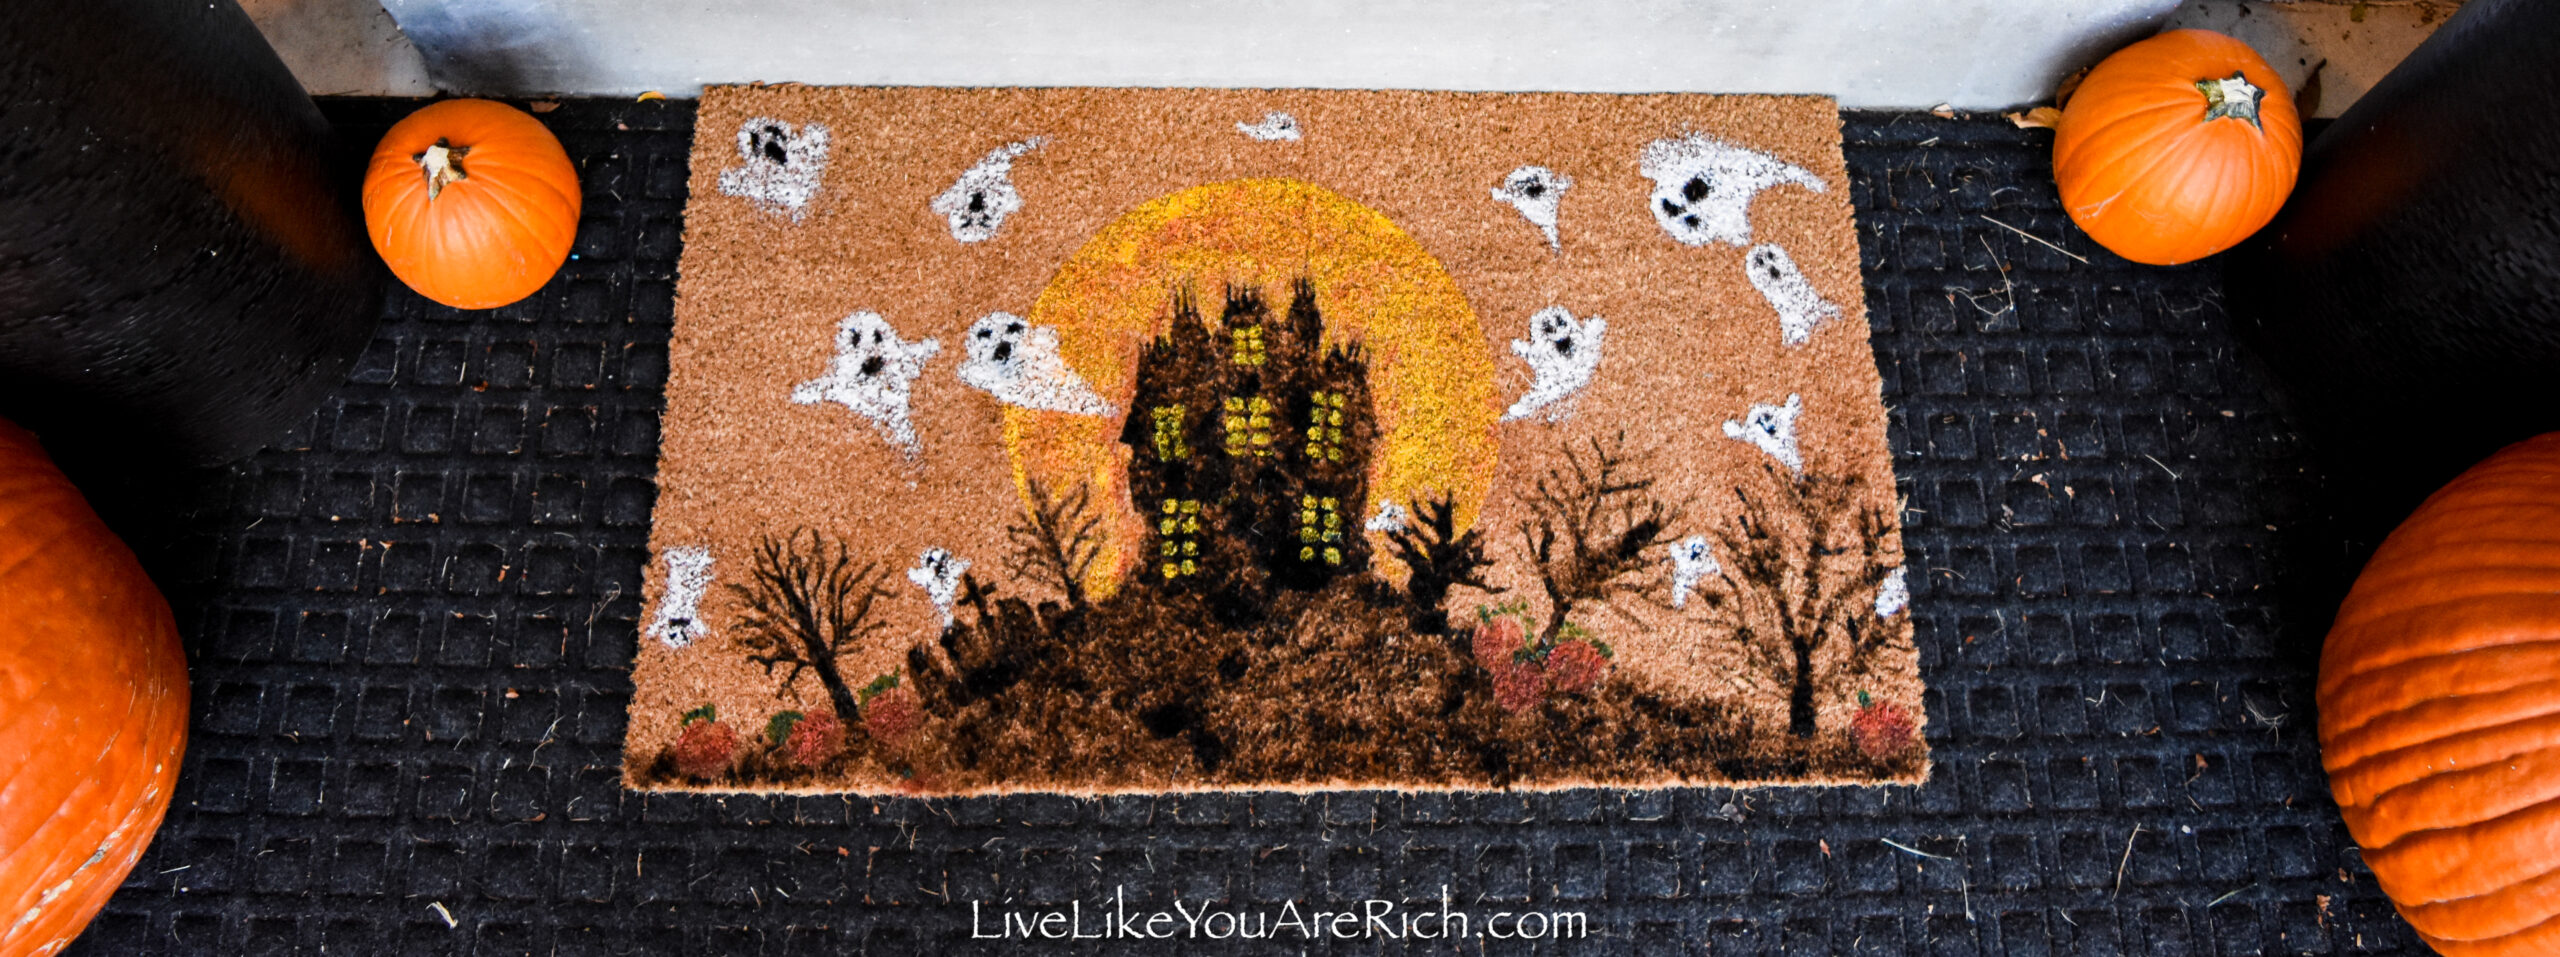 Haunted House Halloween Doormat